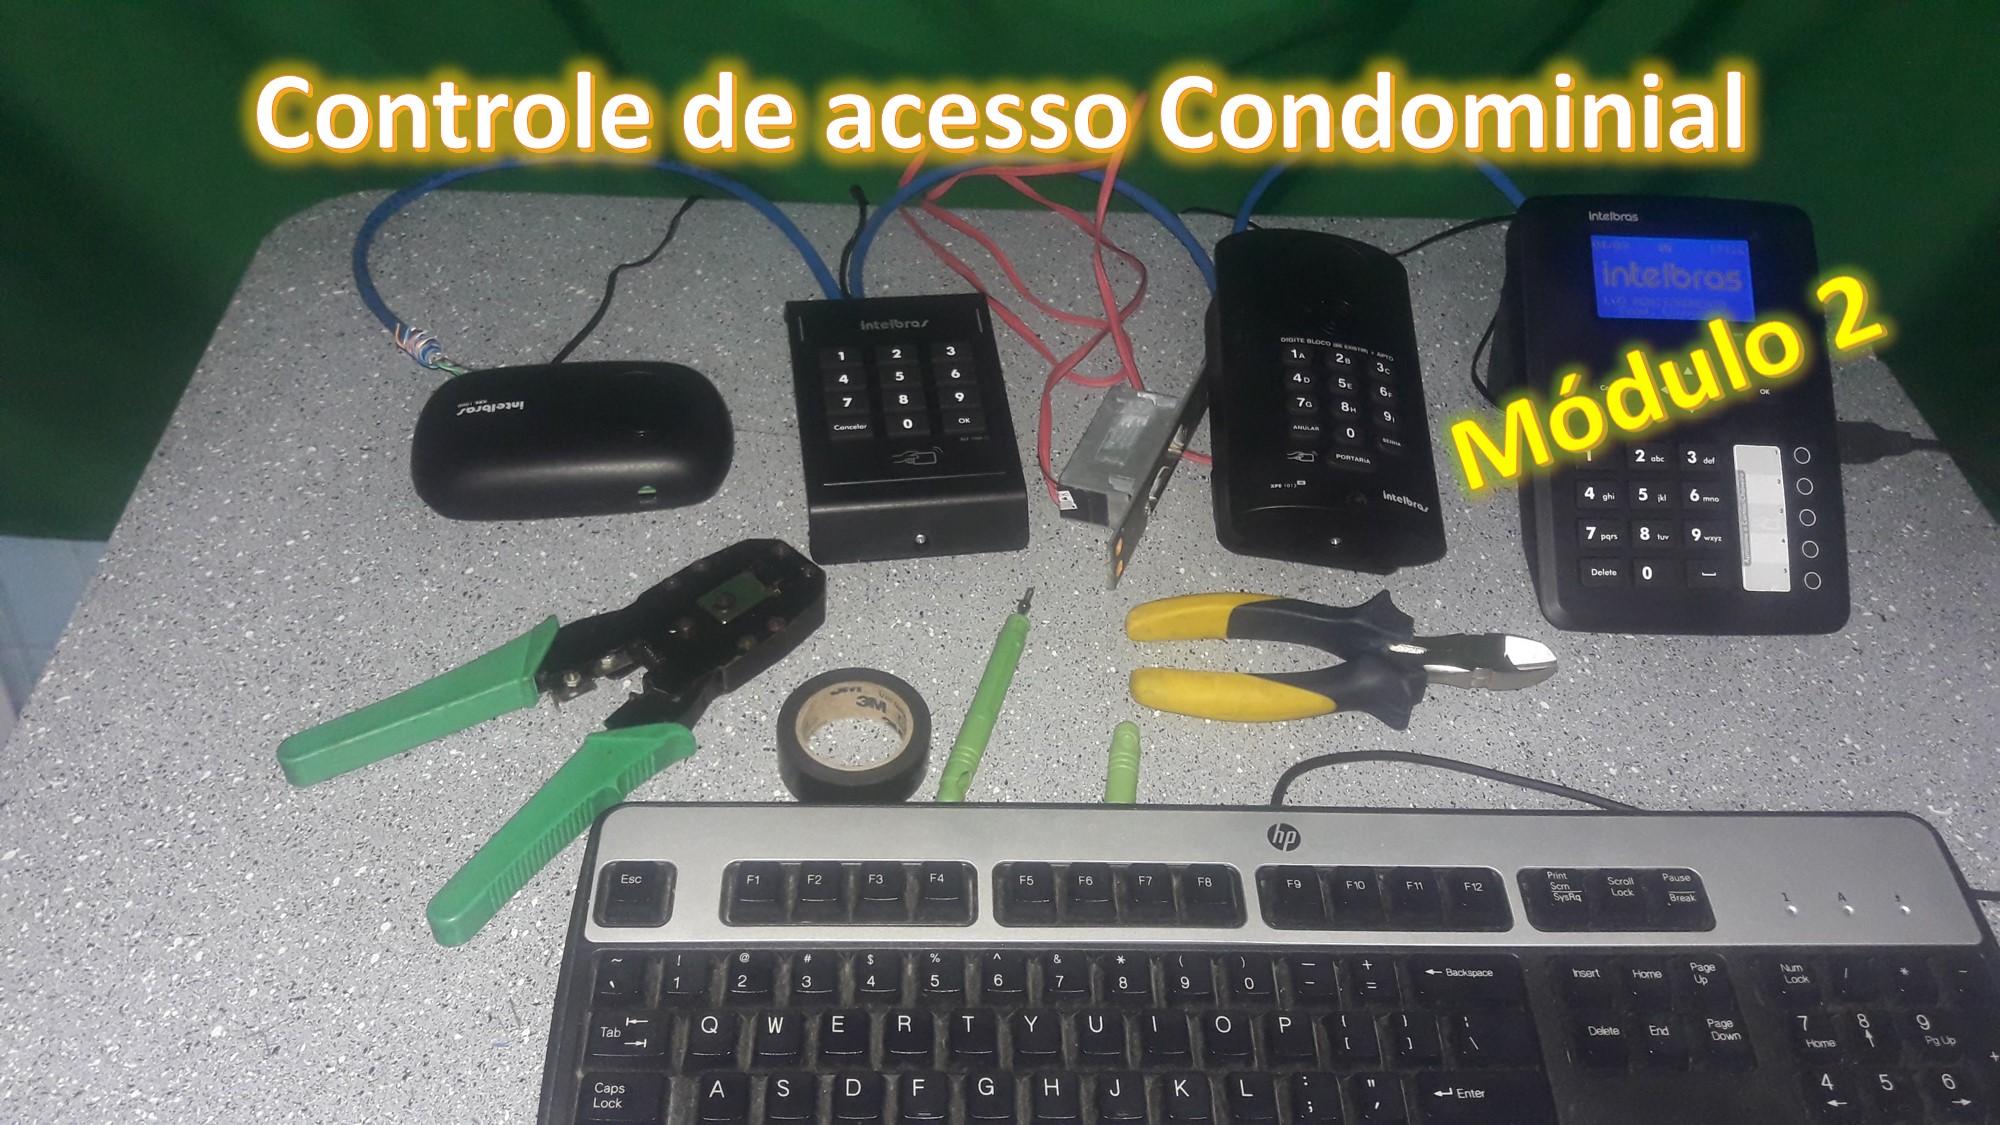 CONTROLE DE ACESSO CONDOMINIAL - MODULO 2